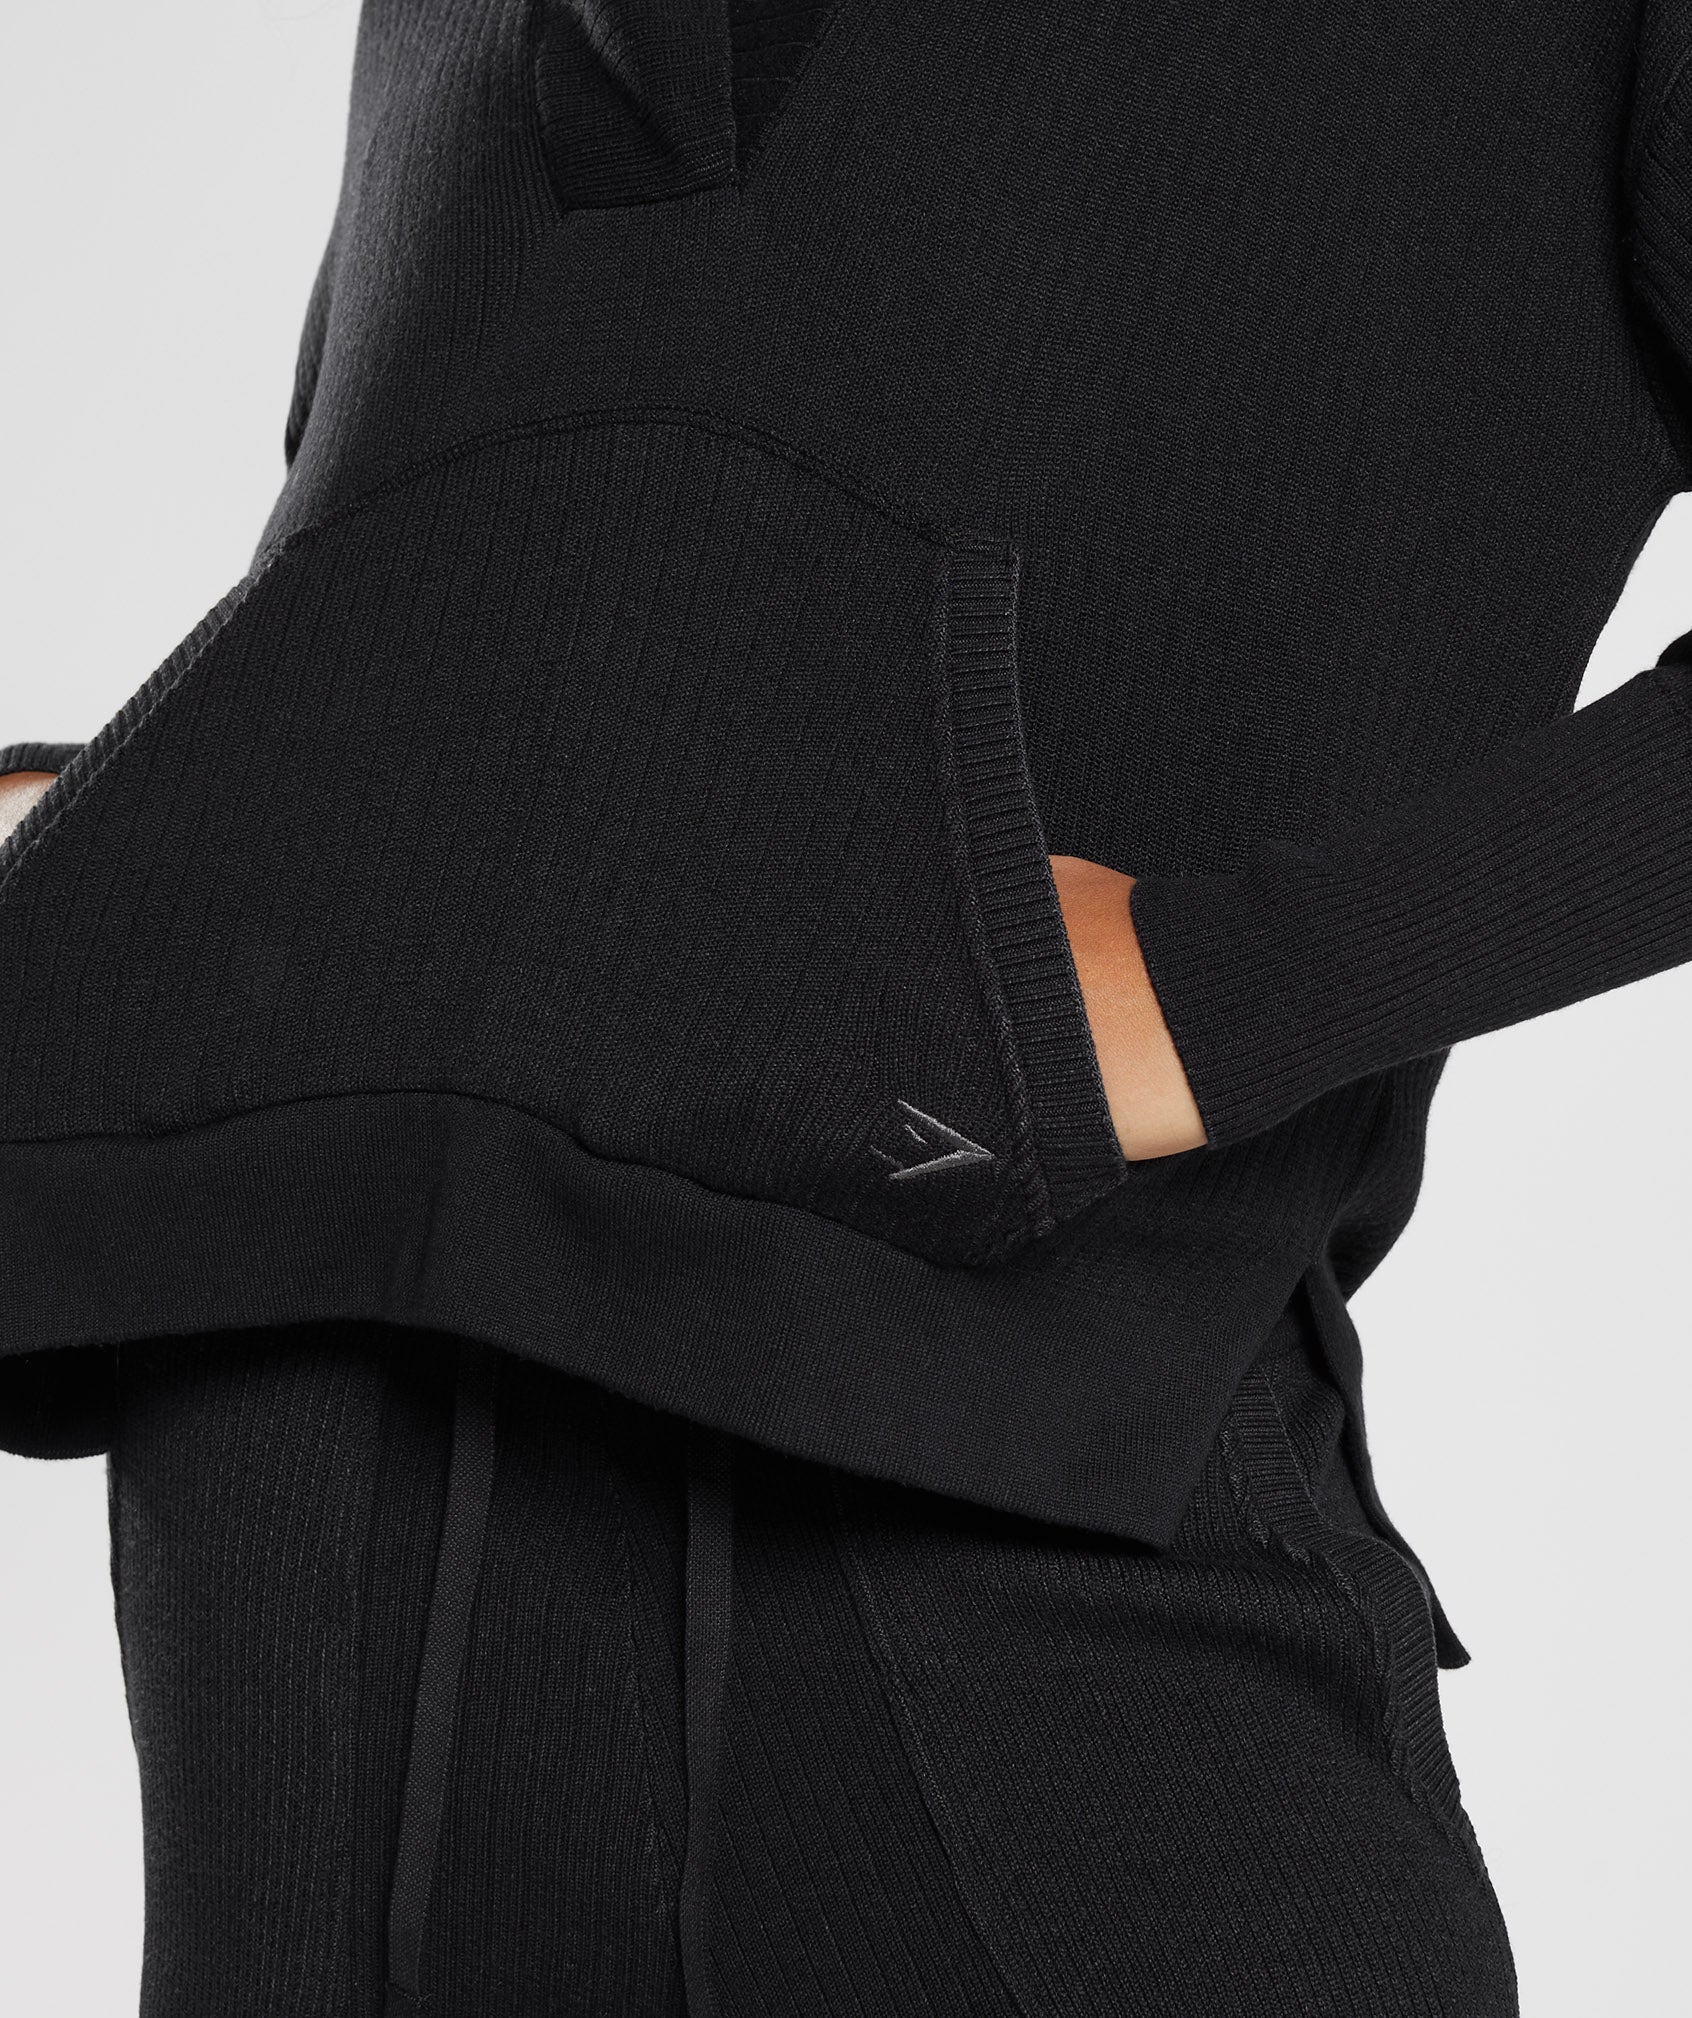 Pause Knitwear Hoodie in Black/Onyx Grey - view 7